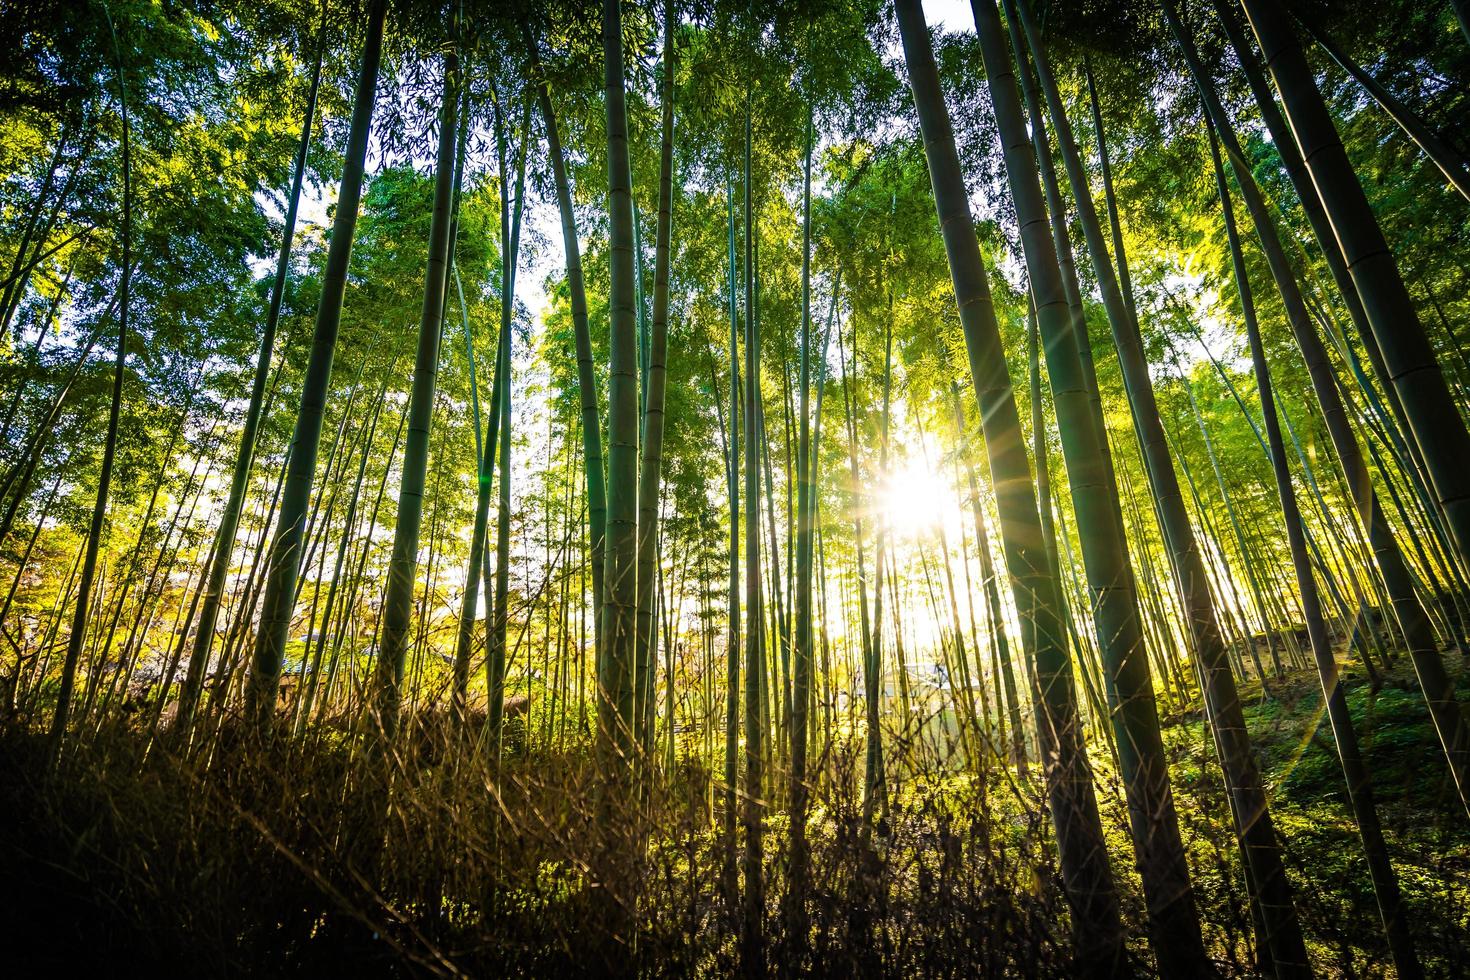 bellissima foresta di bambù ad arashiyama, kyoto foto